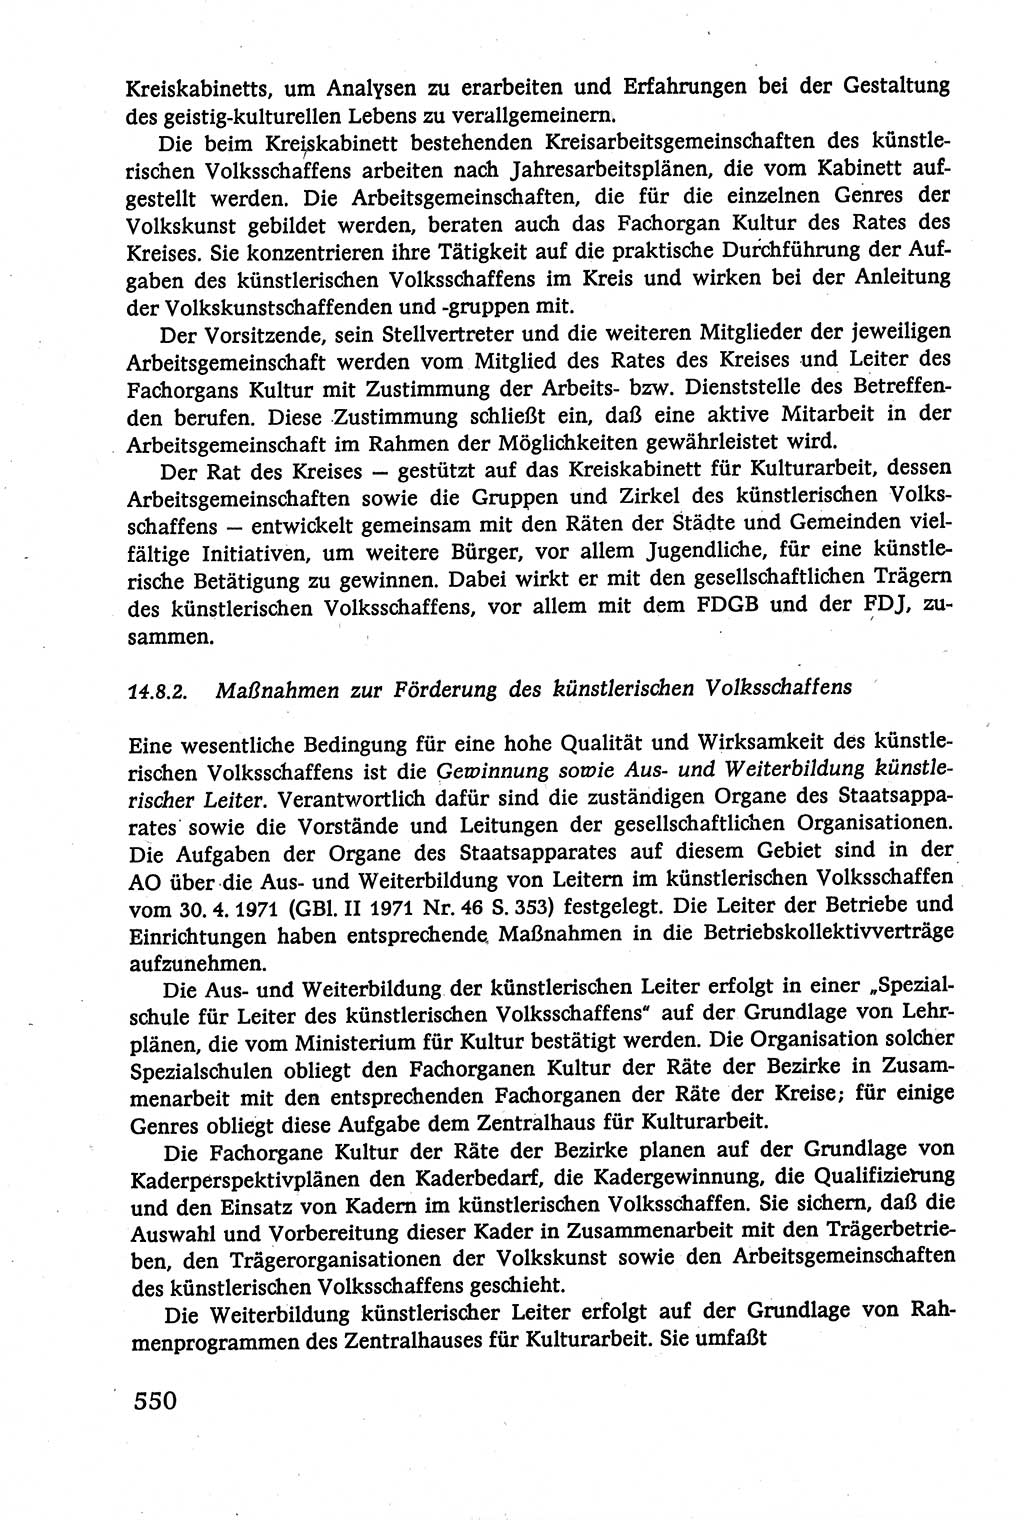 Verwaltungsrecht [Deutsche Demokratische Republik (DDR)], Lehrbuch 1979, Seite 550 (Verw.-R. DDR Lb. 1979, S. 550)